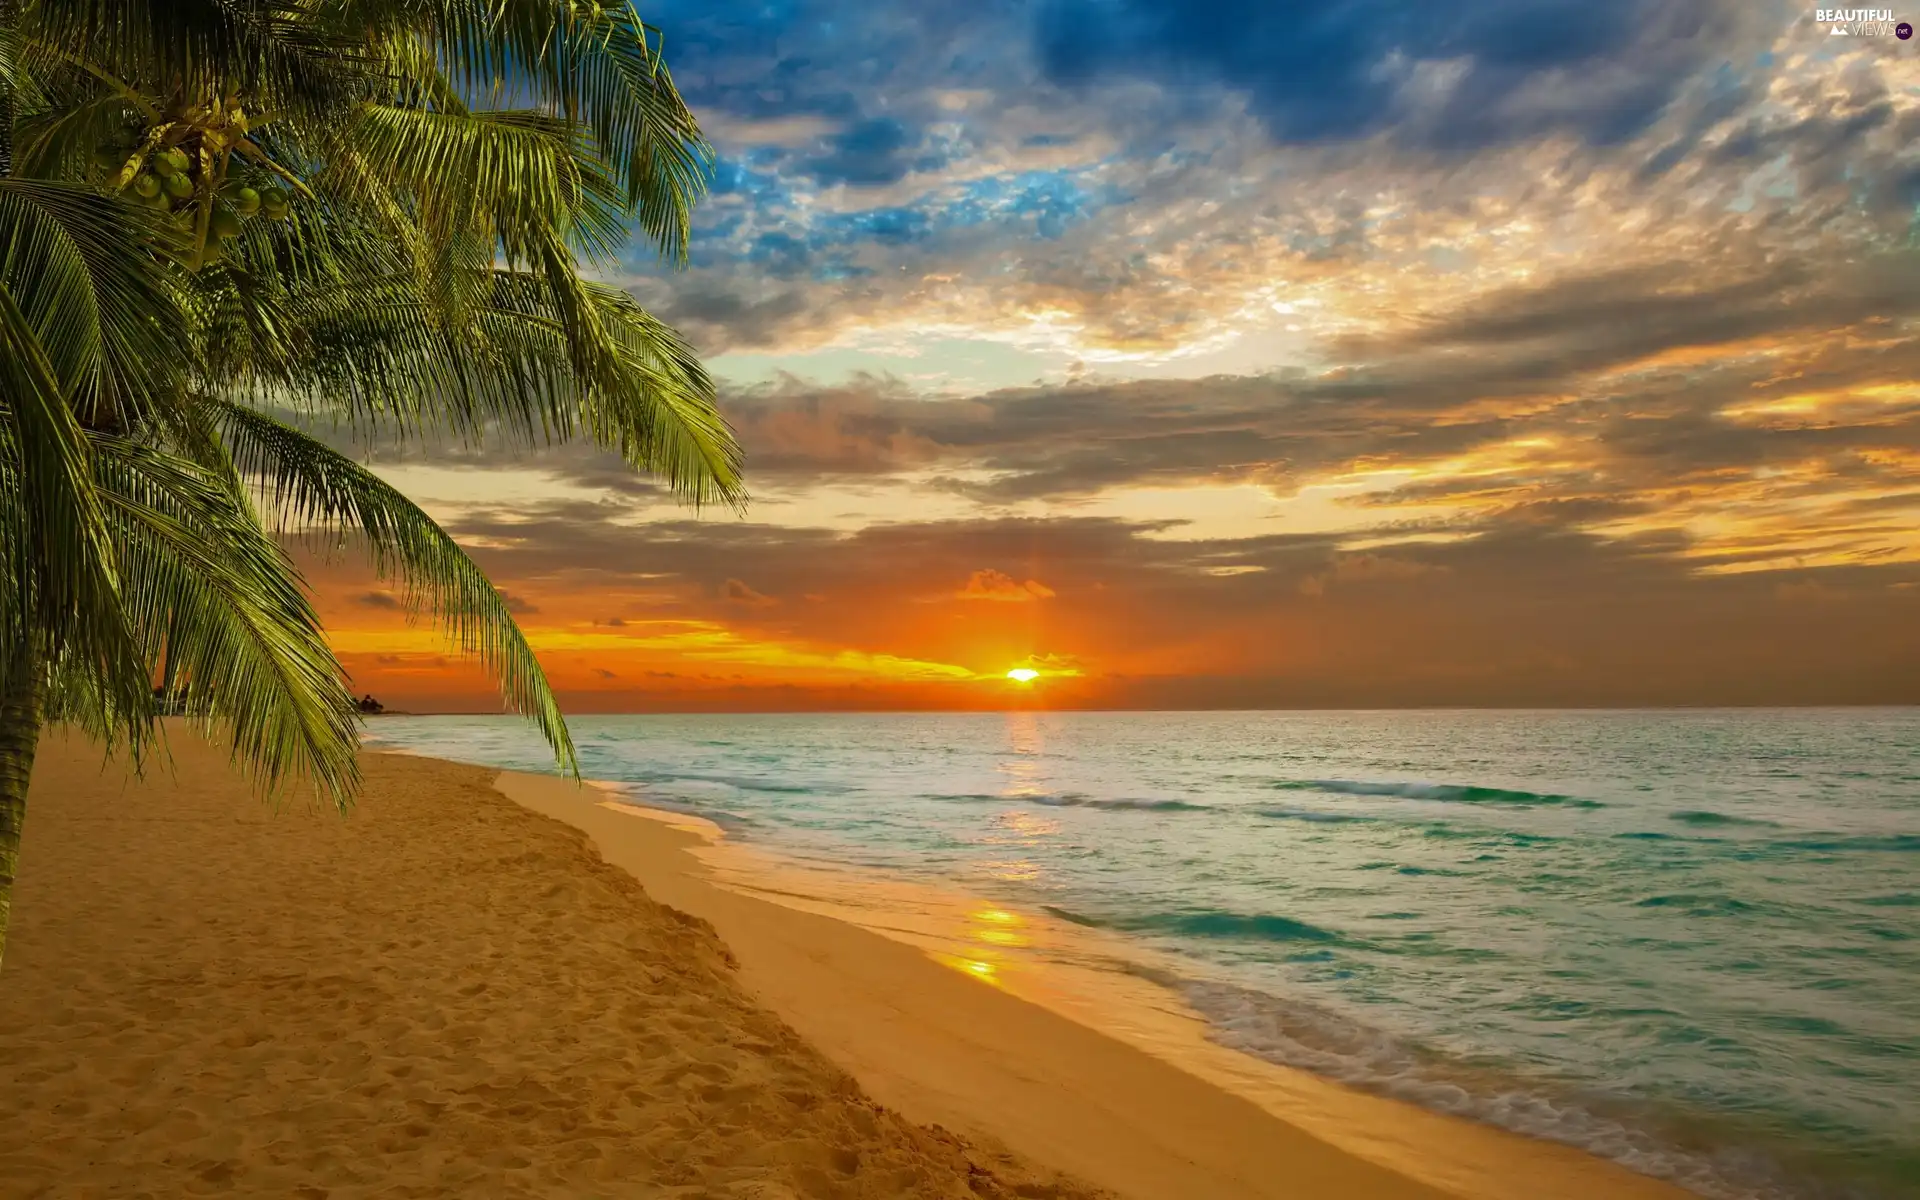 Great Sunsets, Beaches, Palms, sea - Beautiful views ...